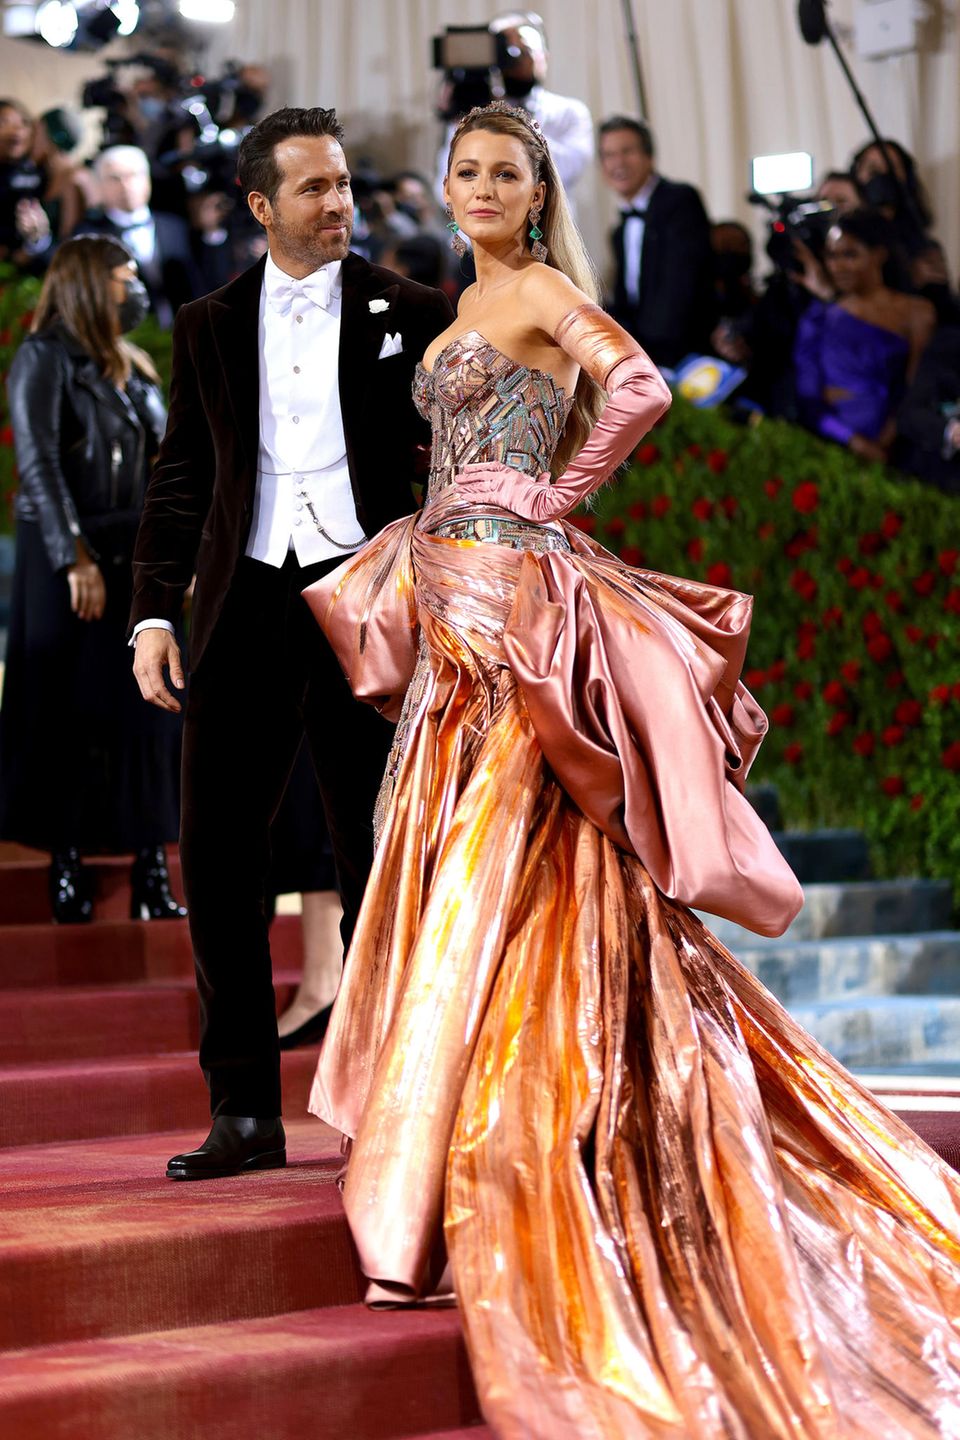 Glamouröser haben Ryan Reynolds (in Ralph Lauren) und Blake Lively (in Versace) noch nie ausgesehen als bei der diesjährigen Met Gala. Blakes Look ist dabei besonders eindrucksvoll.